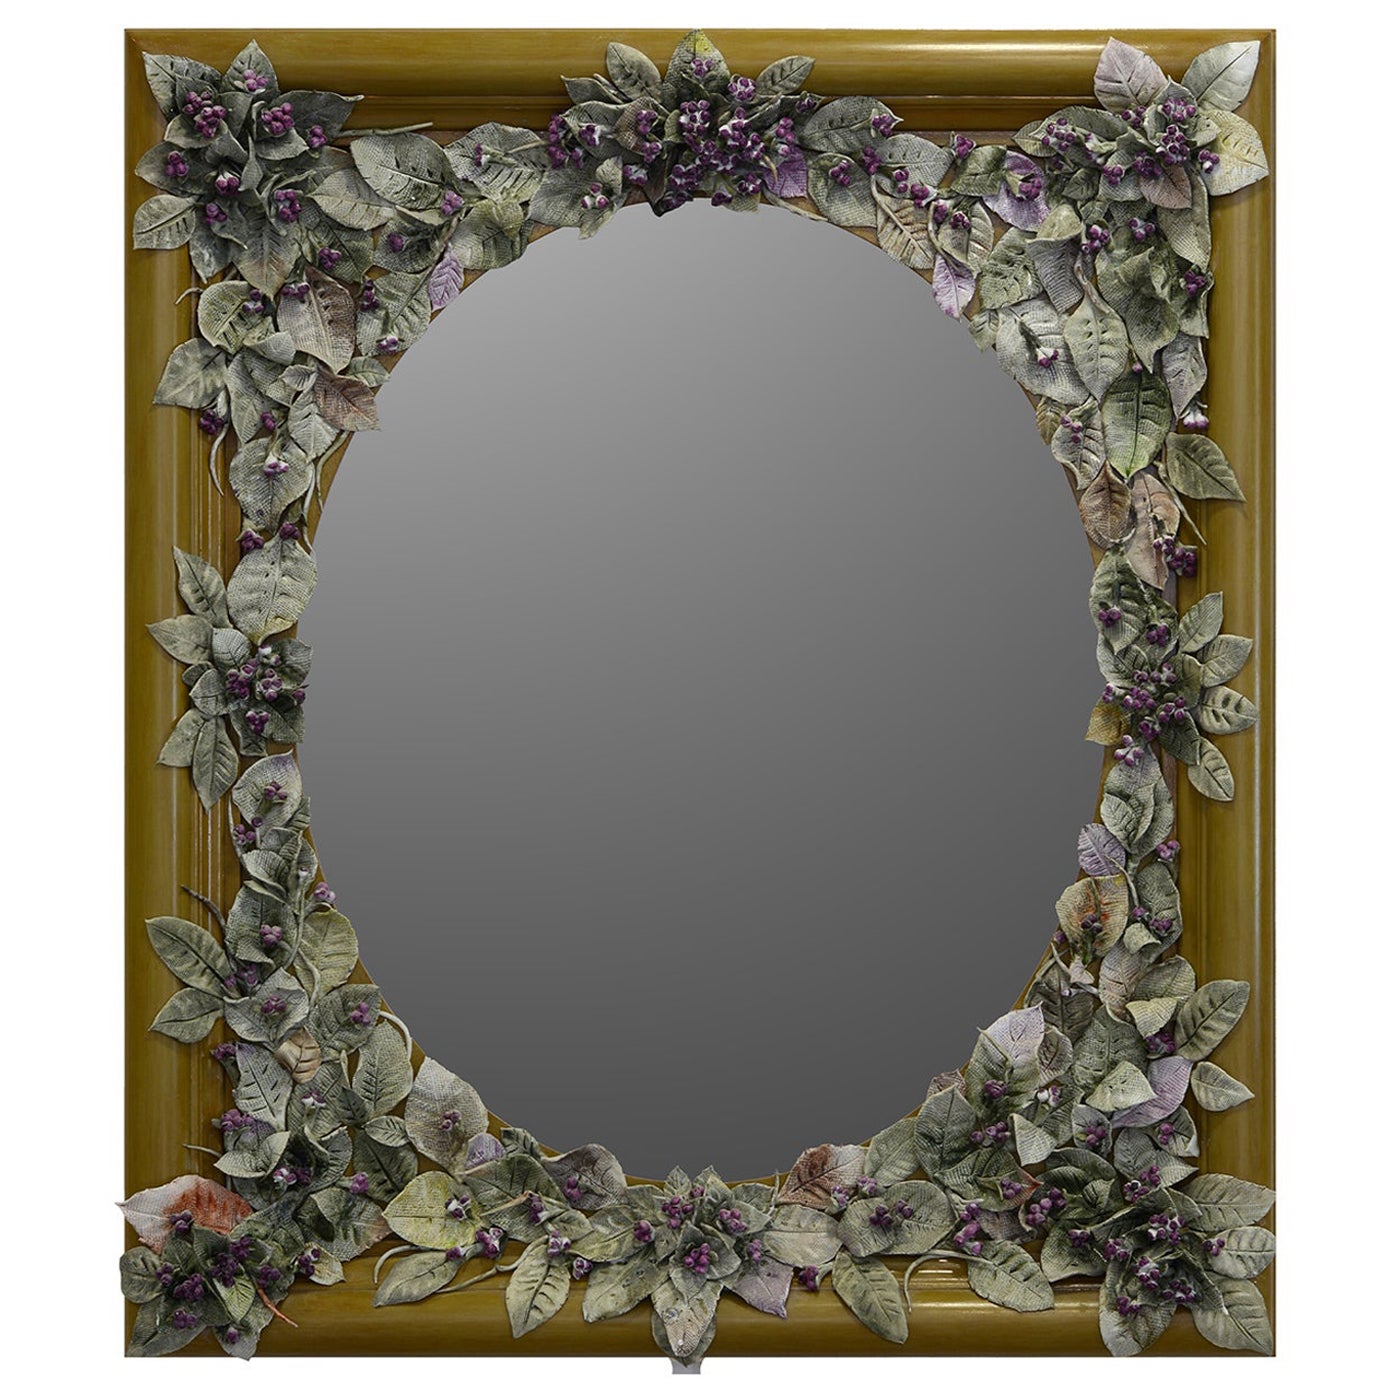 Violet Buds Mirror